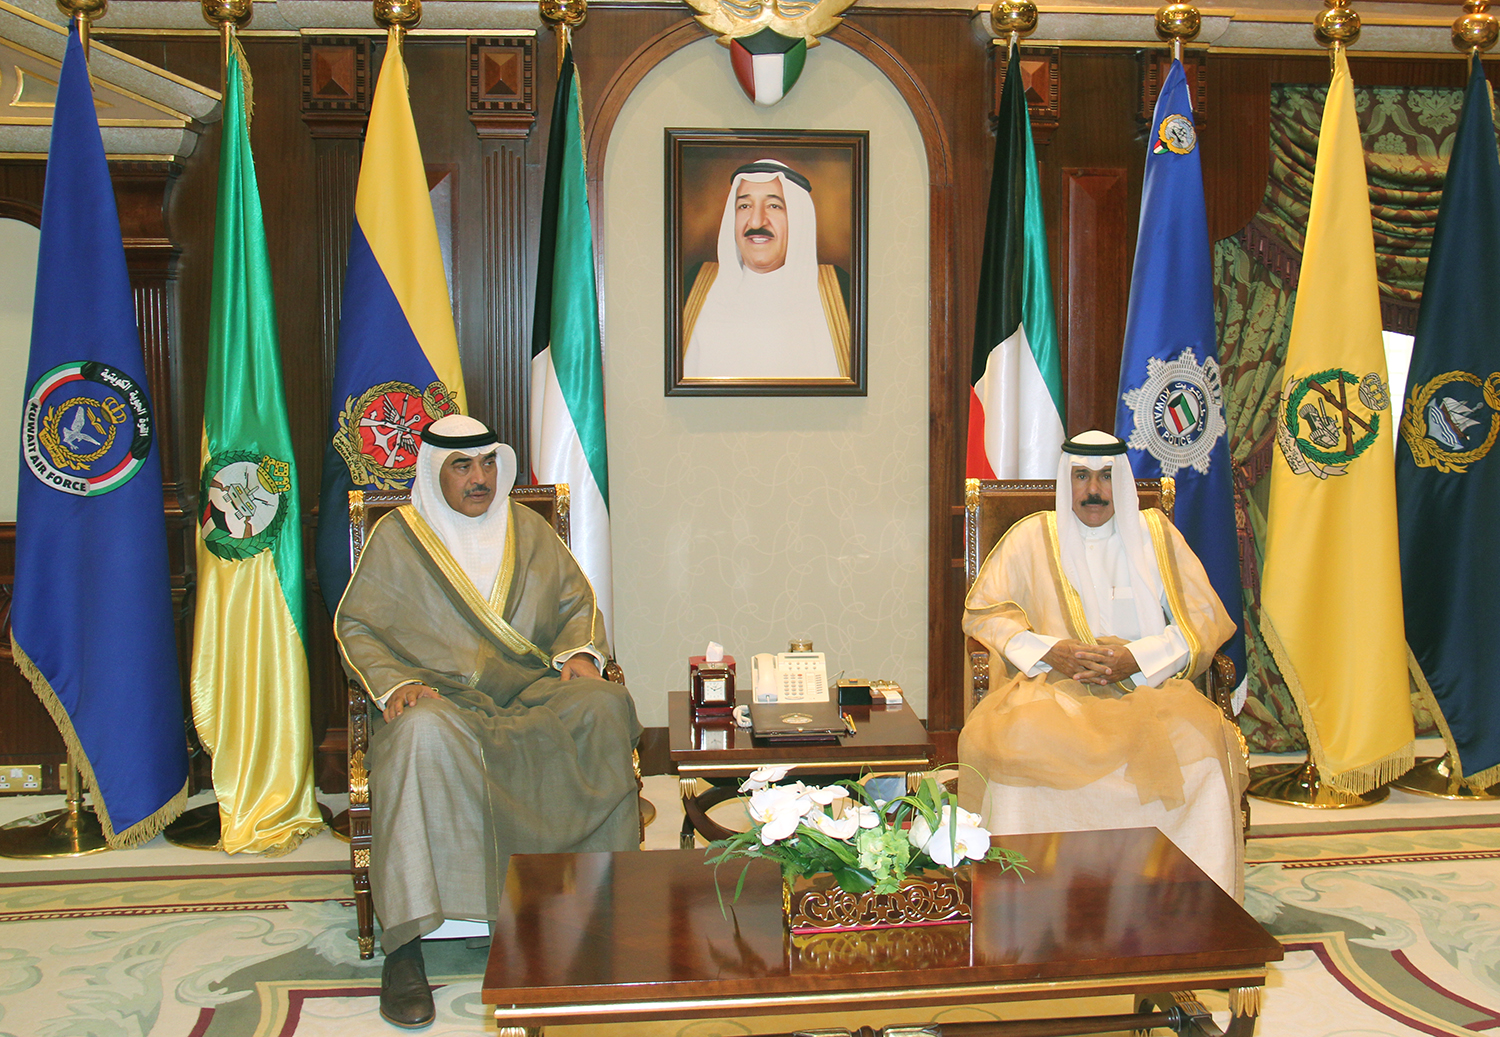 His Highness the Deputy Amir and Crown Prince Sheikh Nawaf Al-Ahmad Al-Jaber Al-Sabah received acting Prime Minister and Foreign Minister Sheikh Sabah Al-Khaled Al-Hamad Al-Sabah